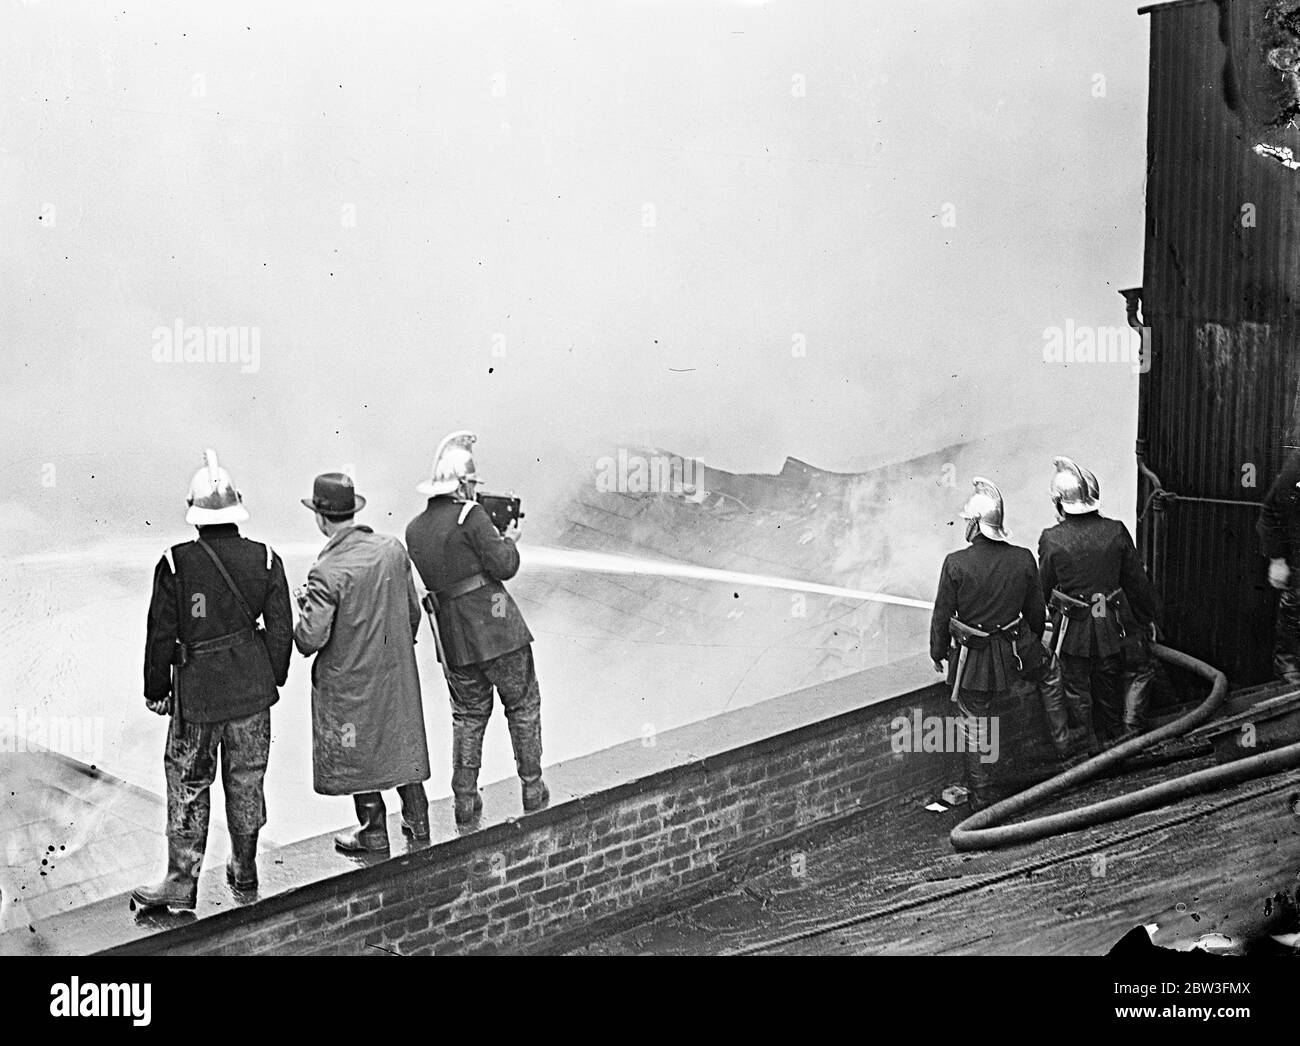 Feuerwehrfilm London Reisfabrik in Flammen . Feuerwehrleute machten eine bewegte Bild Aufnahme der großen Flamme in St George ' s Wharf ein Reis-Lager von Carbutt und Comapny, ltd in Shad Thames, Bermondsey. Etwa 250 Feuerwehrleute kämpften gegen die Flammen. Foto zeigt, Feuerwehrleute Filmen die Flamme. April 1936 Stockfoto